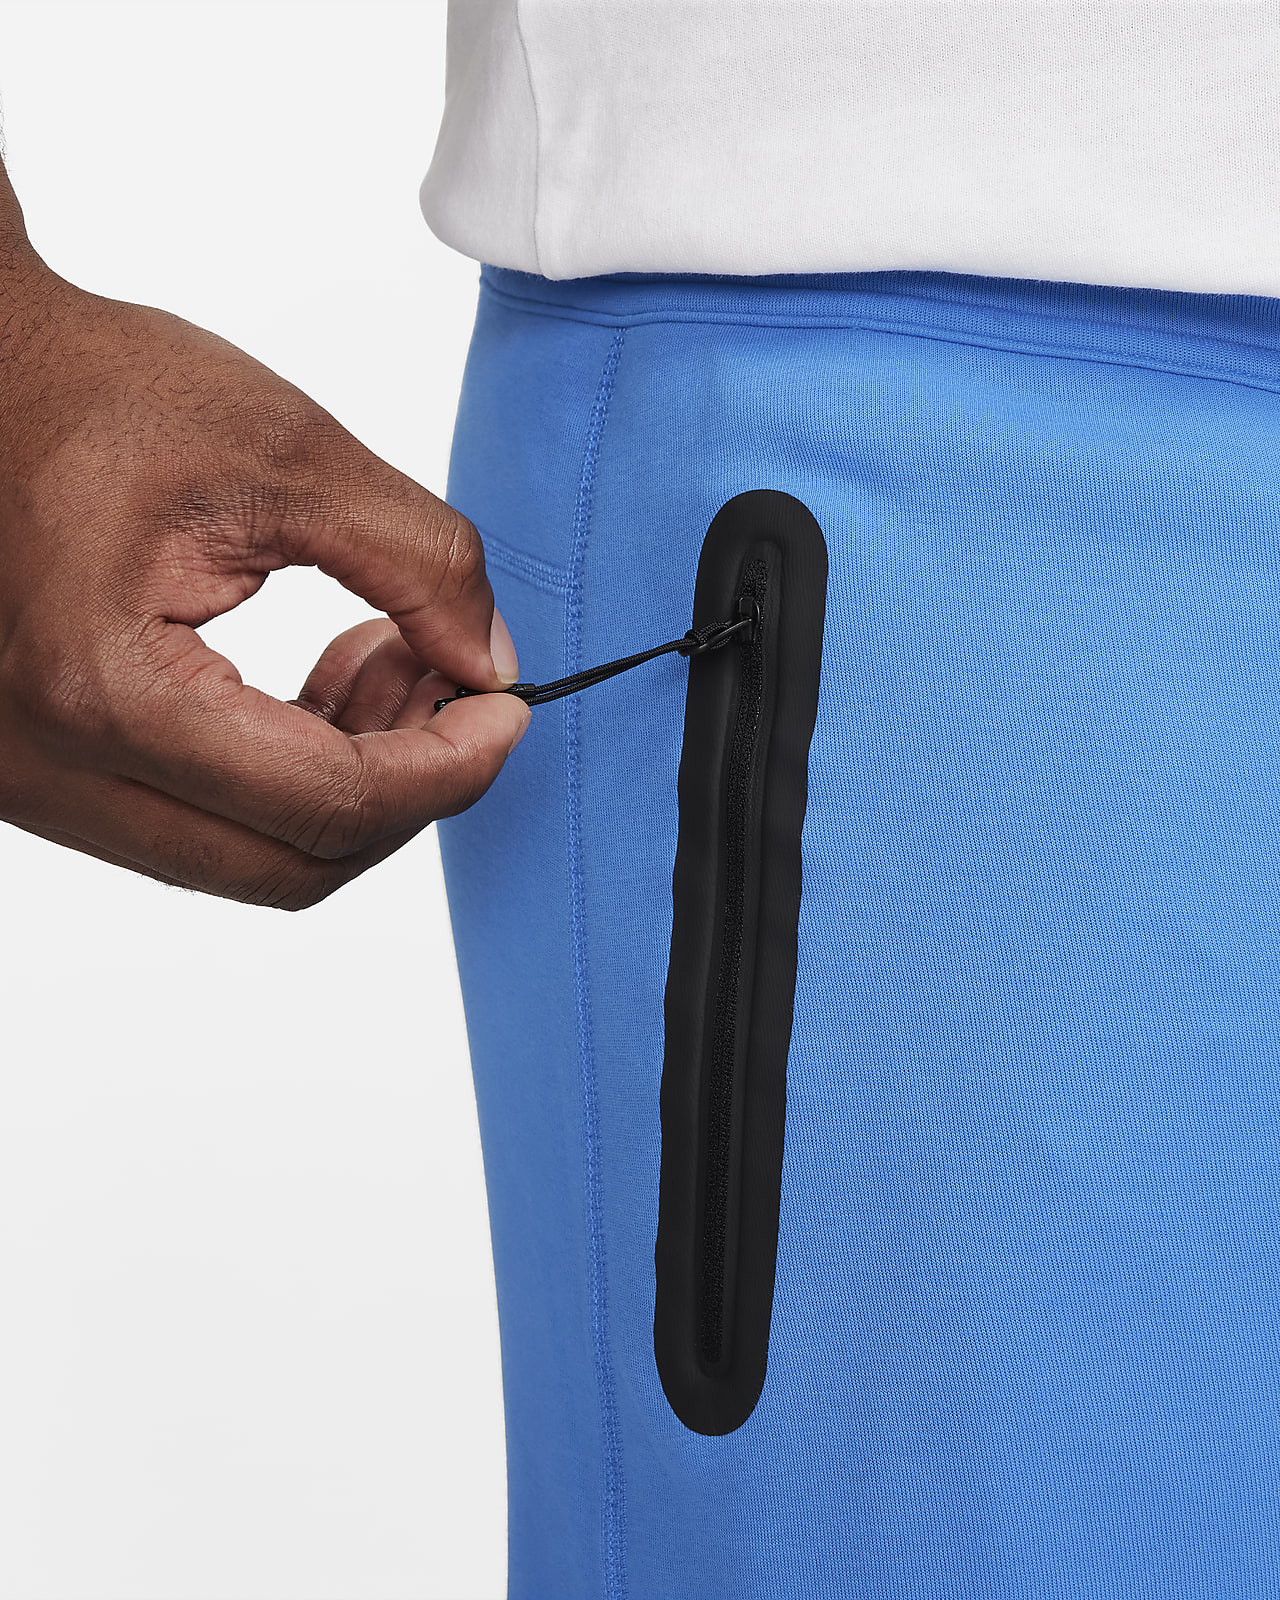 Nike Sportswear Tech Fleece Beige - Vêtements Sweats Homme 108,00 €